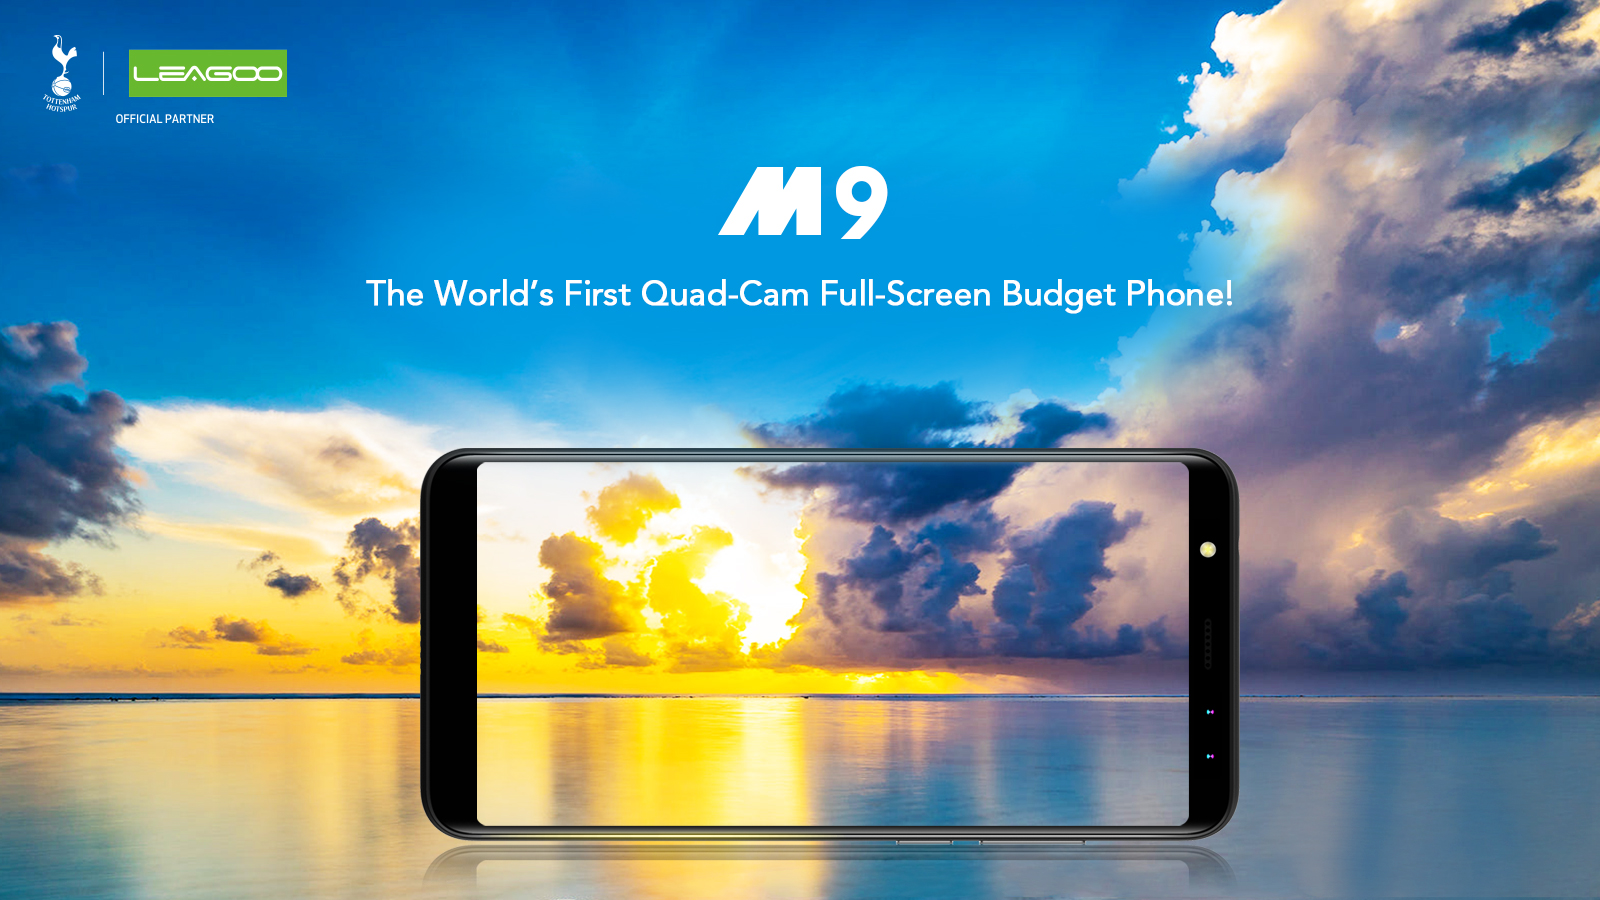 Това е първият бюджетен смартфон с подобни характеристикиLEAGOO M9 е